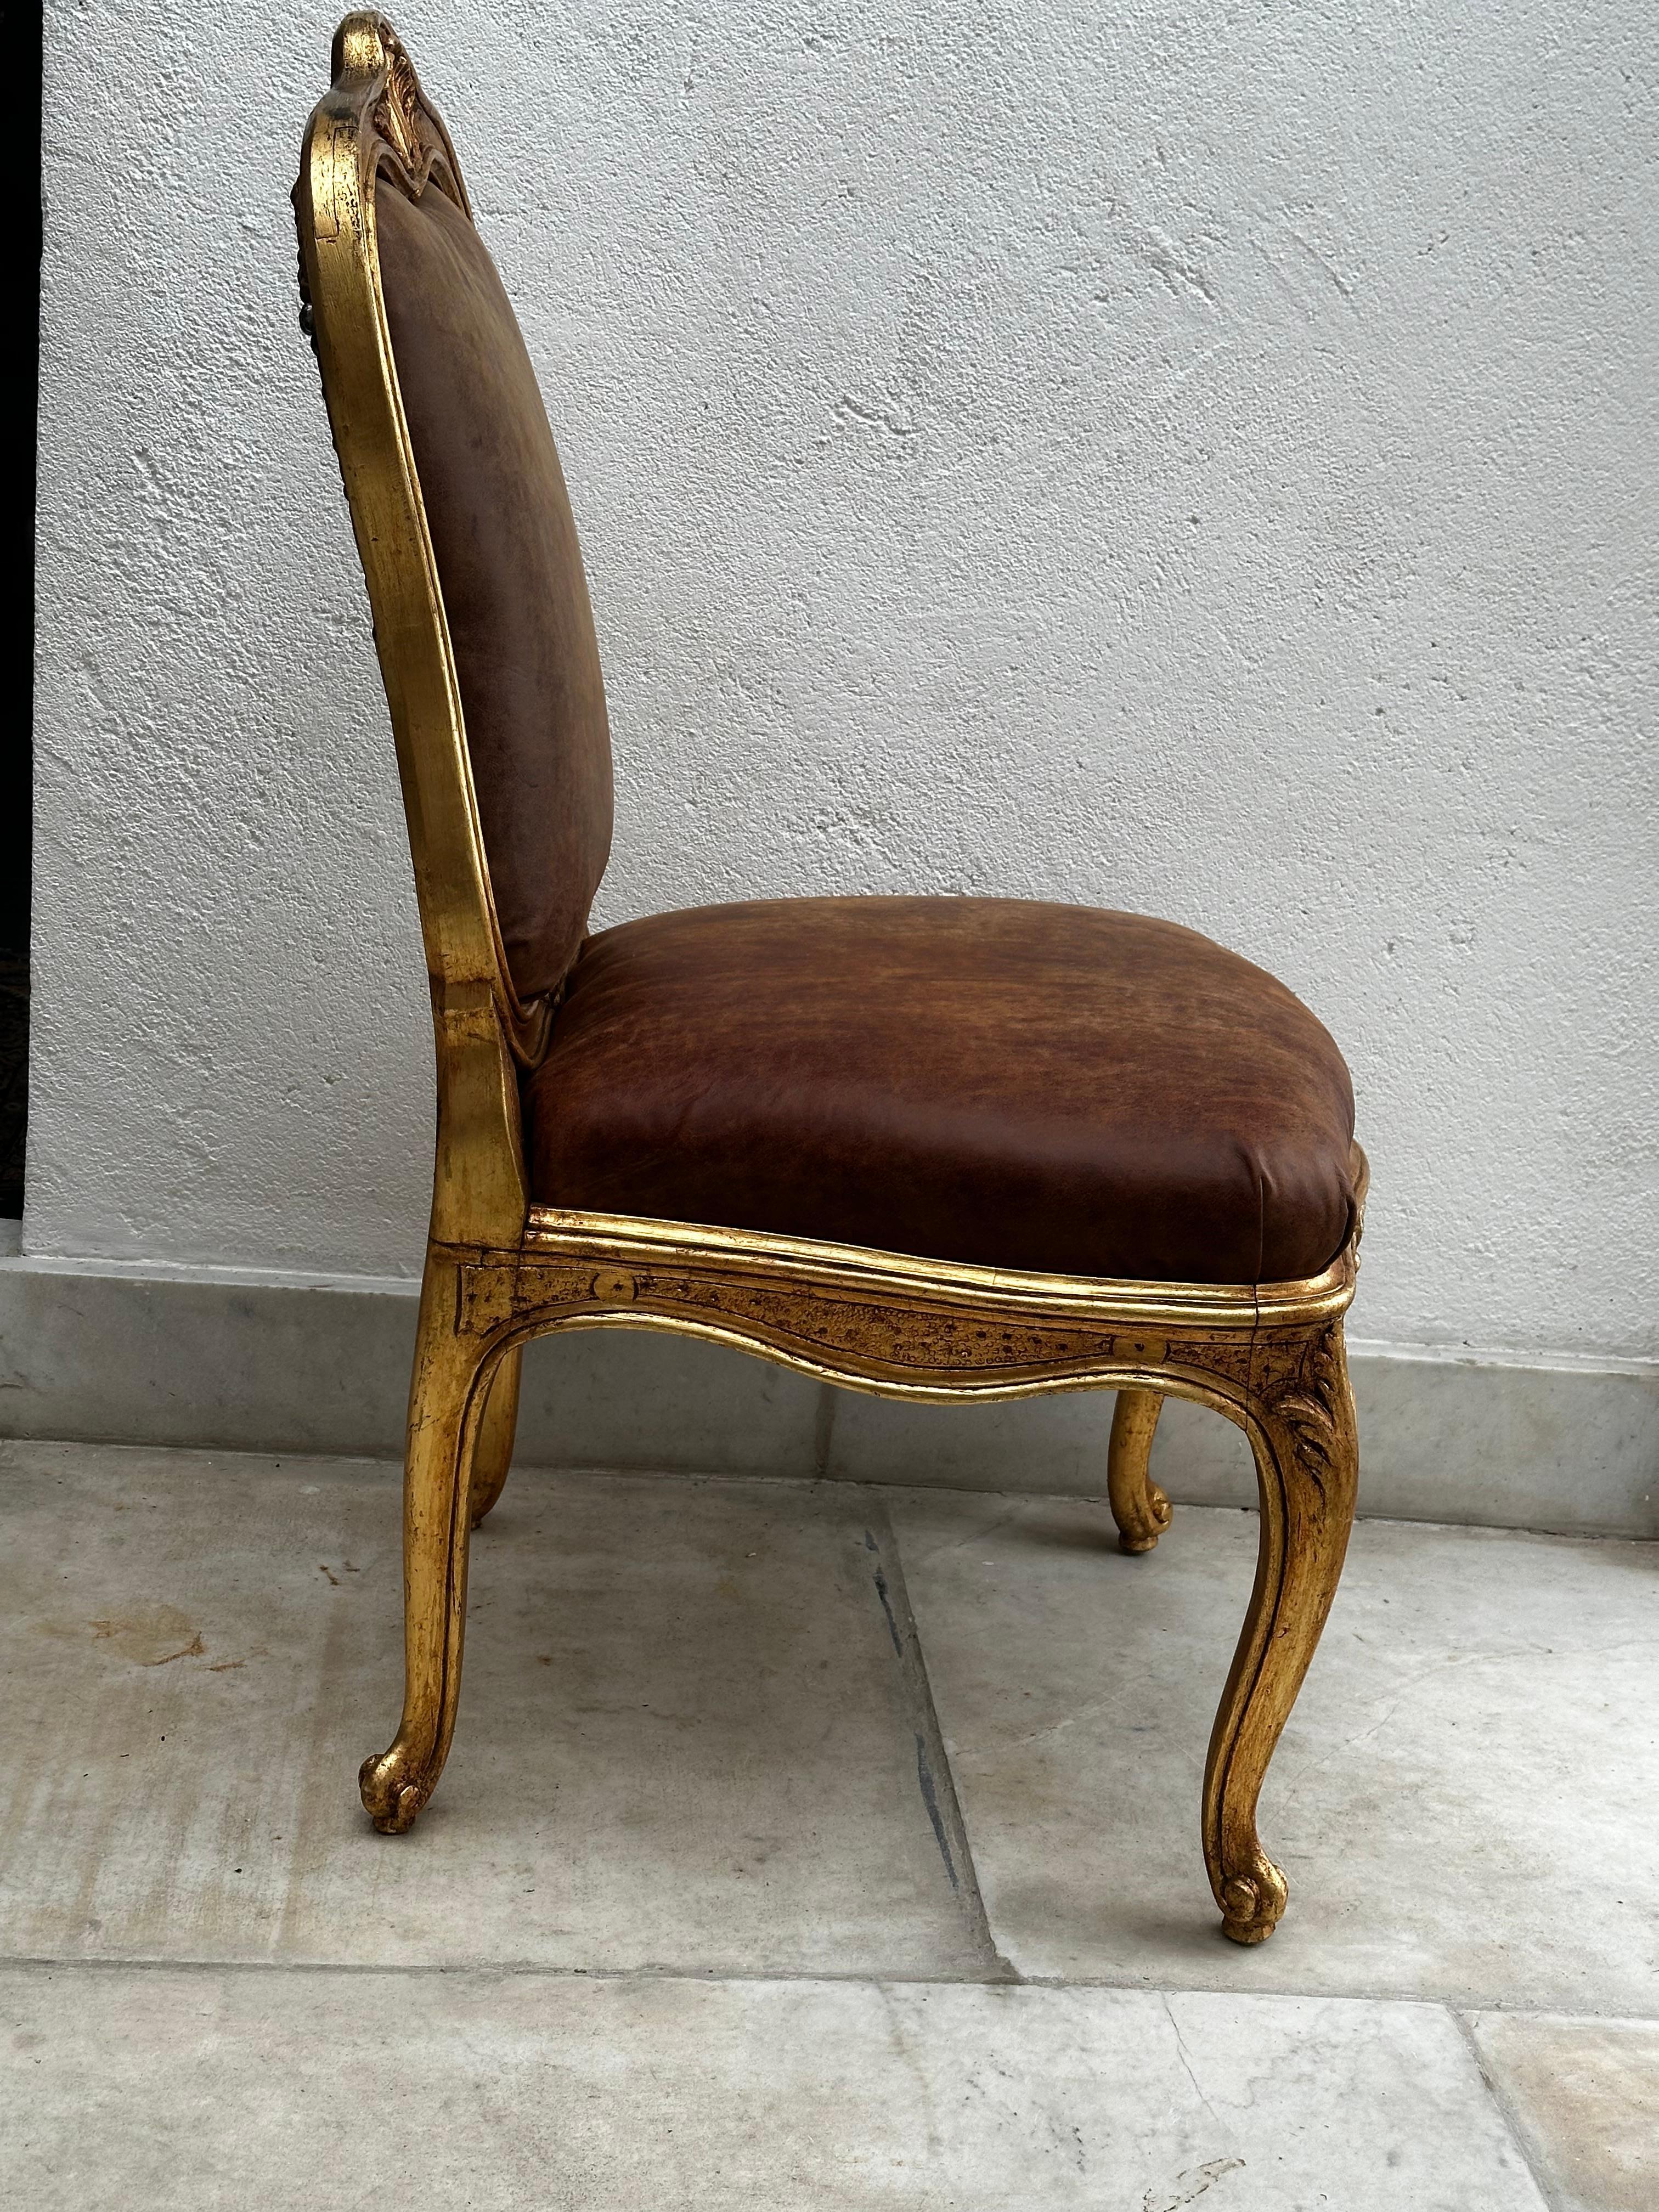 Chaise fabriquée dans l'atelier royal de Stockholm, attribuée à Carl Magnus Sandberg. Non signé. Il est devenu membre de l'association des fabricants de chaises de Stockholm.  1760 et est décédé avant 1790. Il est très rare que des chaises soient